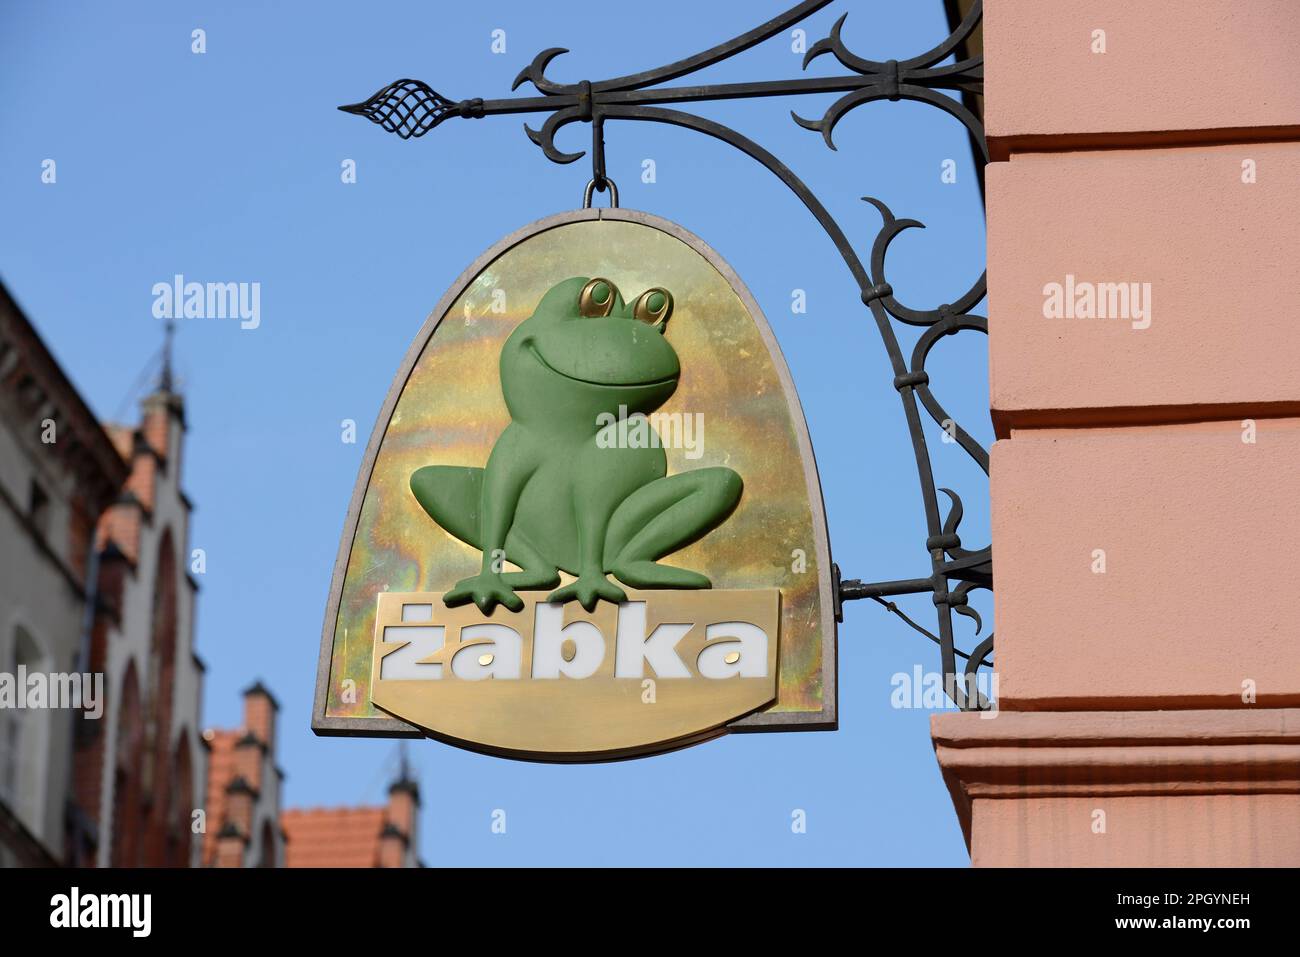 Panneau publicitaire, Zabka Food, Vieille ville, Wroclaw, Basse Silésie, Pologne Banque D'Images